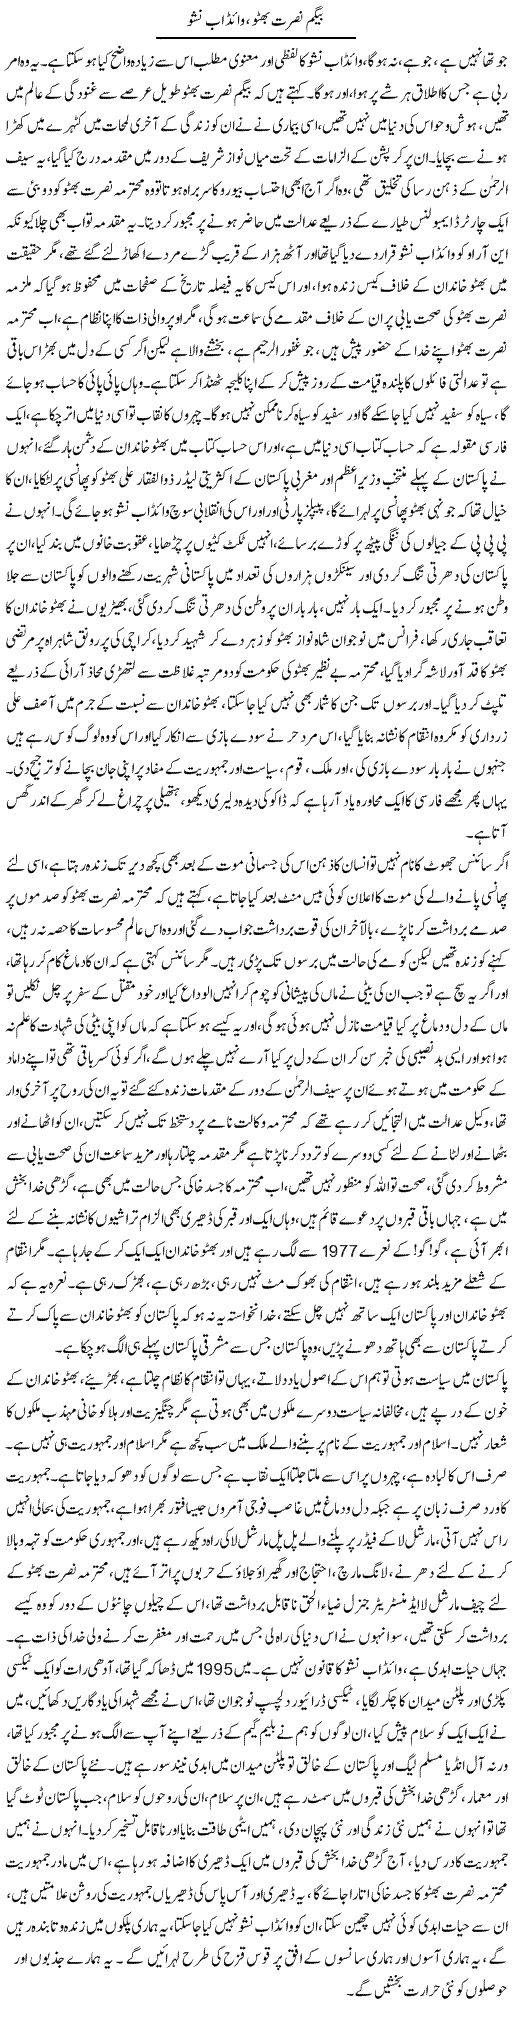 Begum Bhutto Express Column Asadullah Ghalib 25 October 2011